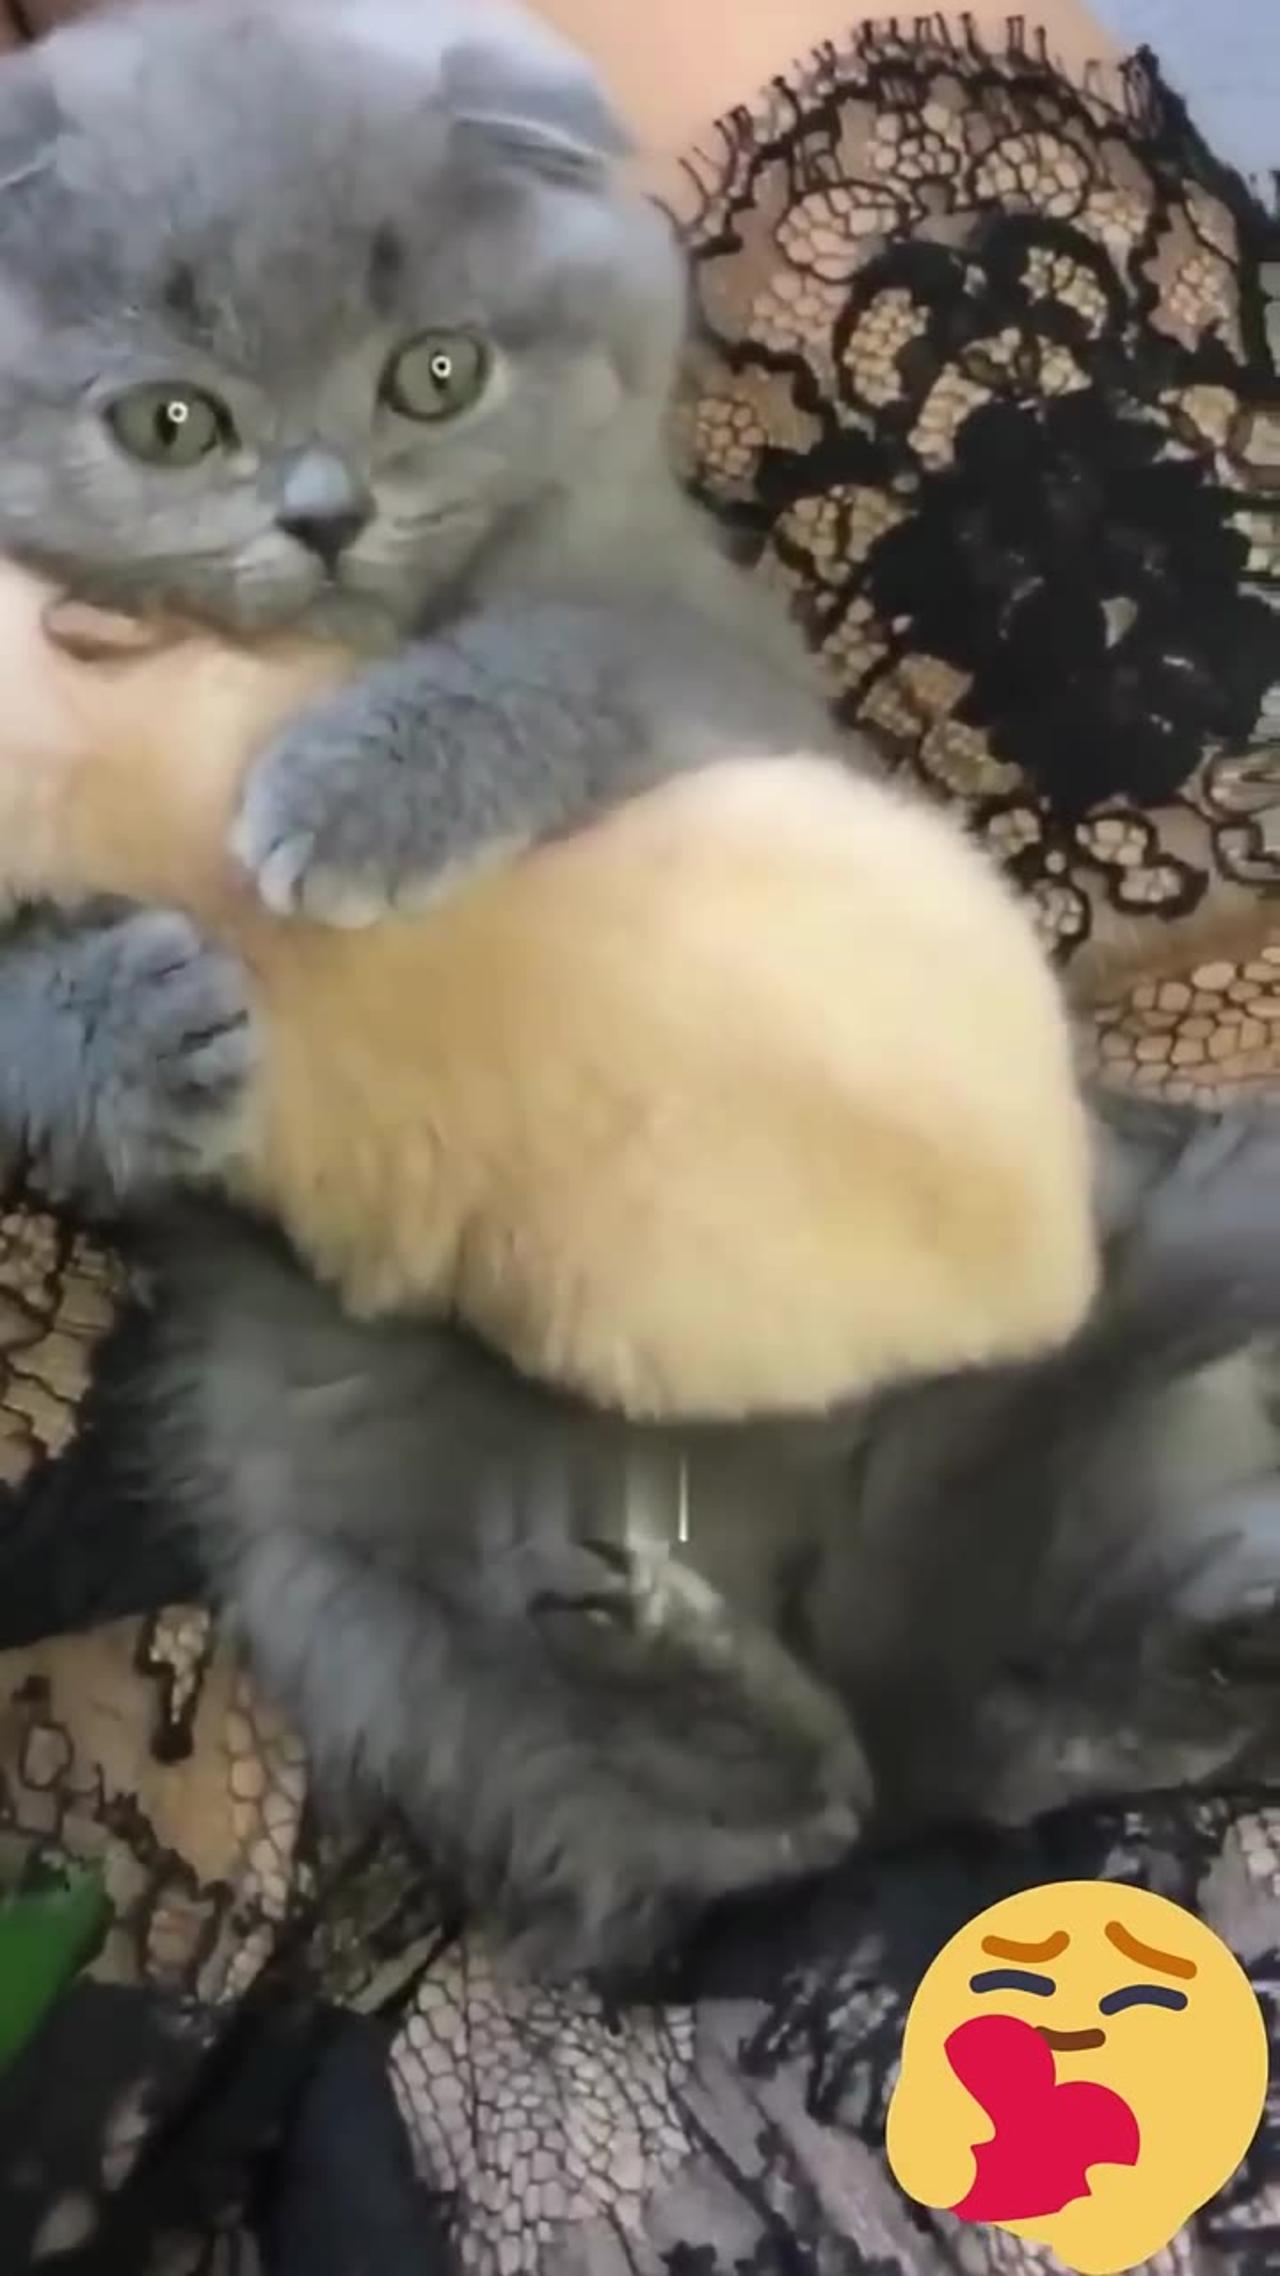 Hey one in a Million love cat 😻💖🐶 Cute kitten hugs puppy